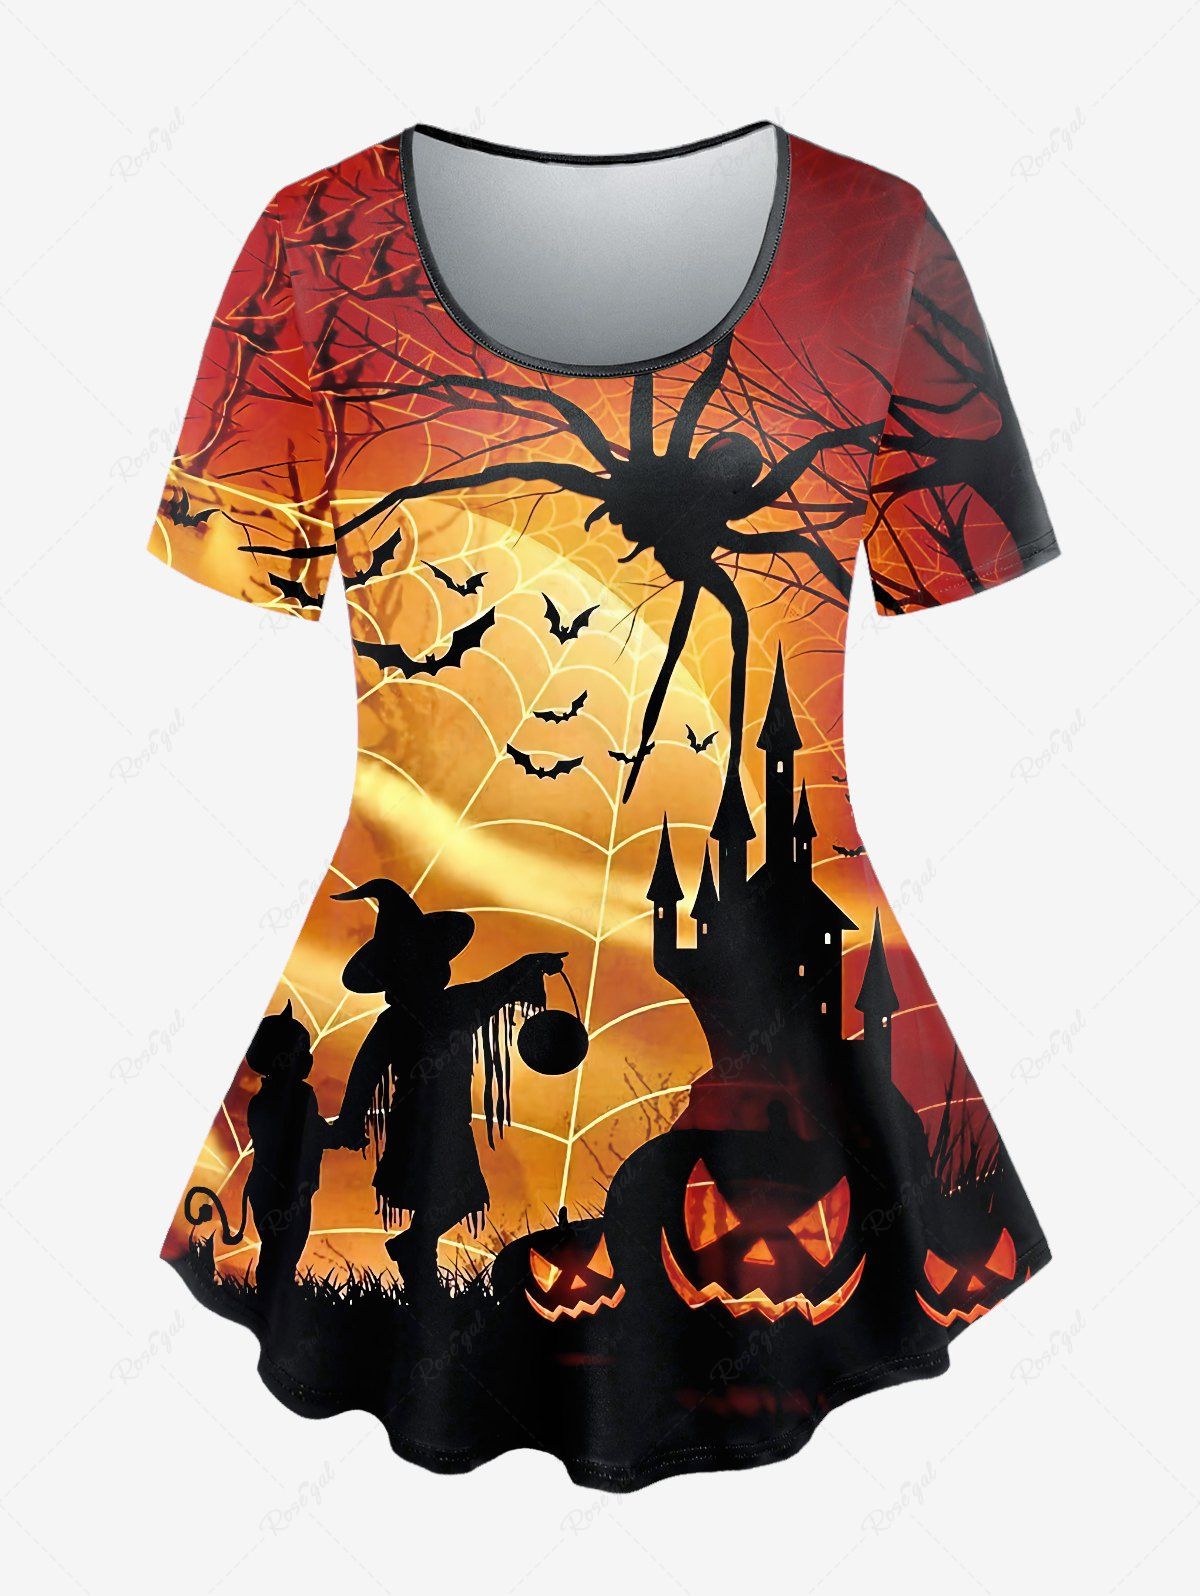 T-shirt D'Halloween à Imprimé Toile D'Araignée Chauve-souris et Citrouille de Grande Taille café 5x | US 30-32